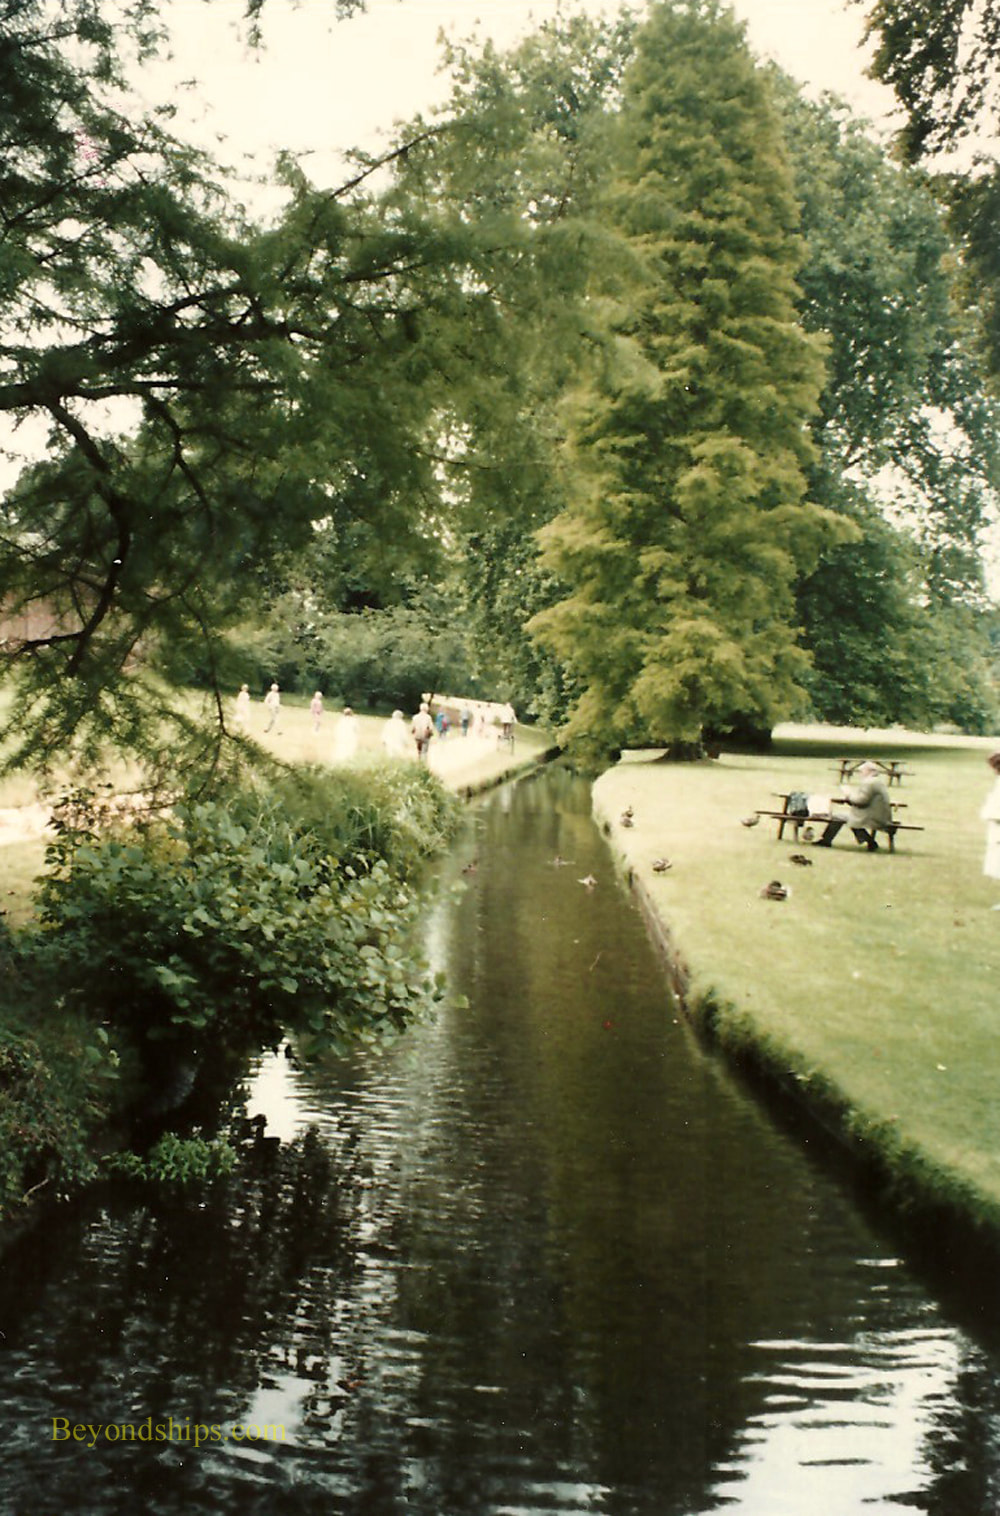 River Test at Broadlands house, England